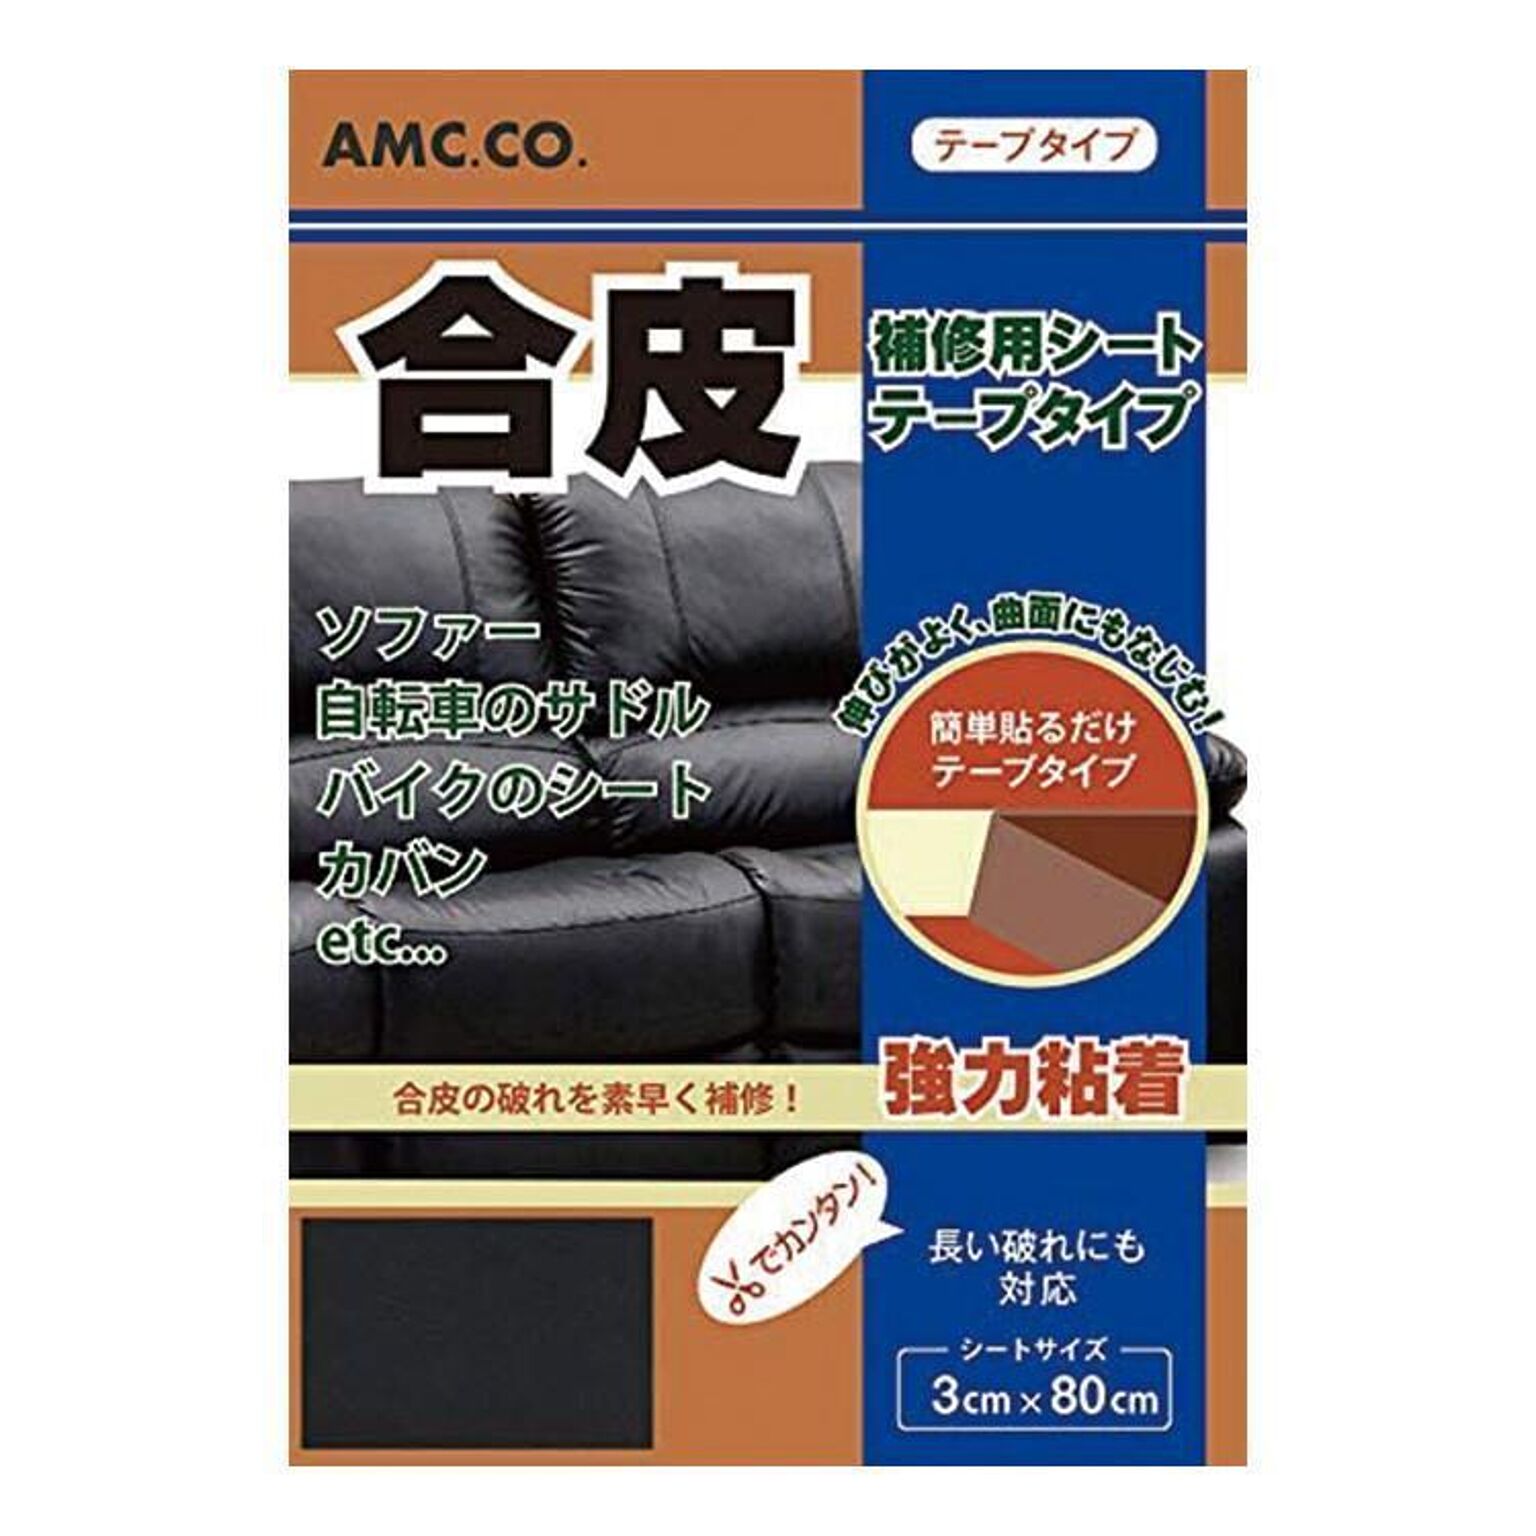 【▽】/合皮補修シート テープタイプ 3cm×80cm